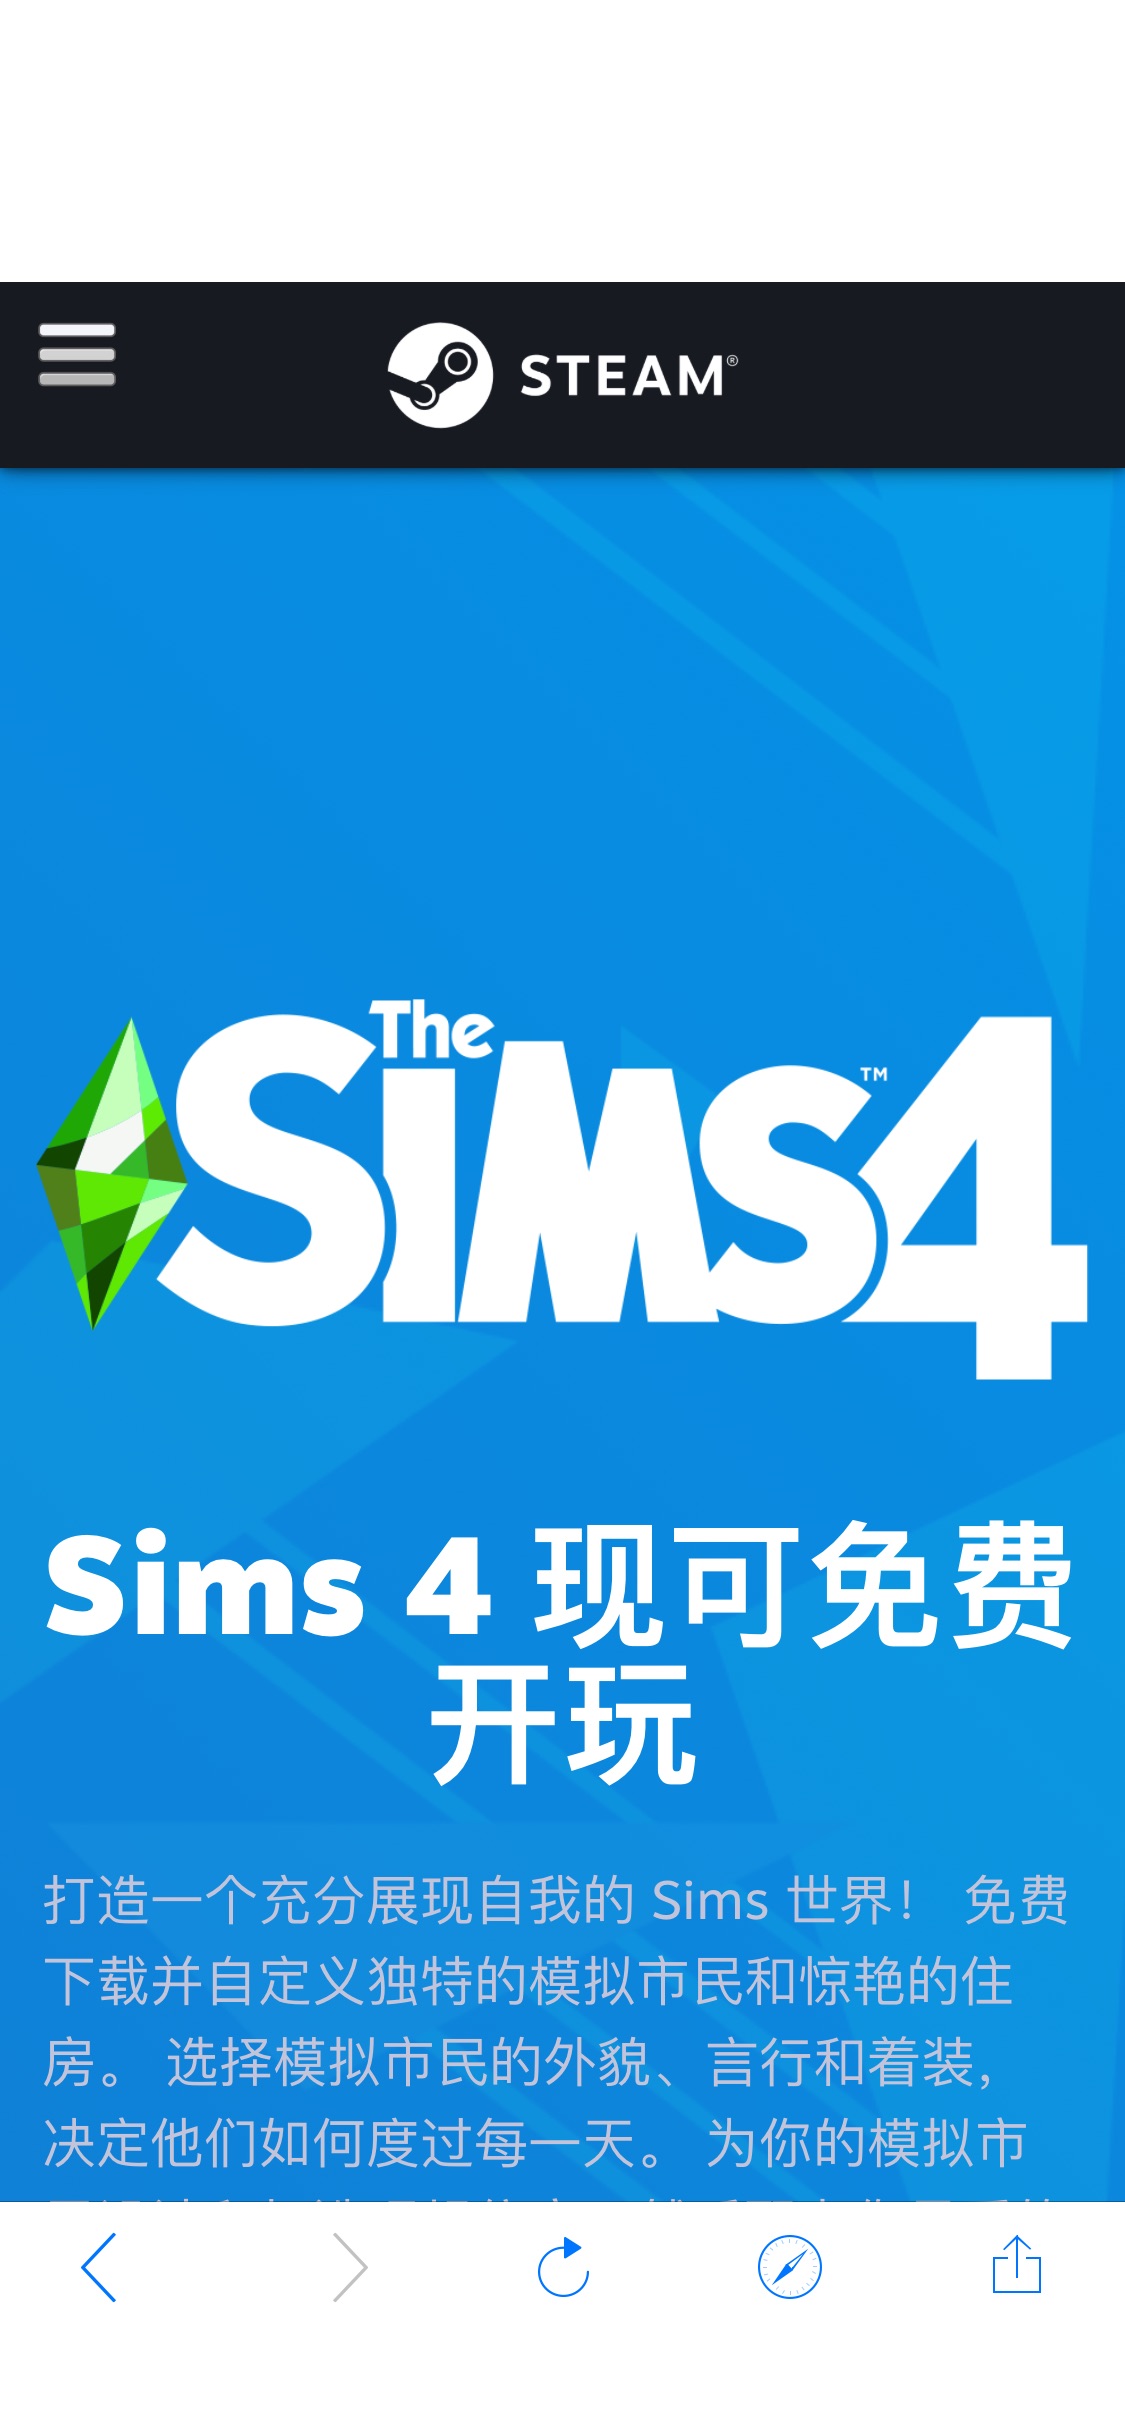 Sims 4 免费开玩庆祝特卖